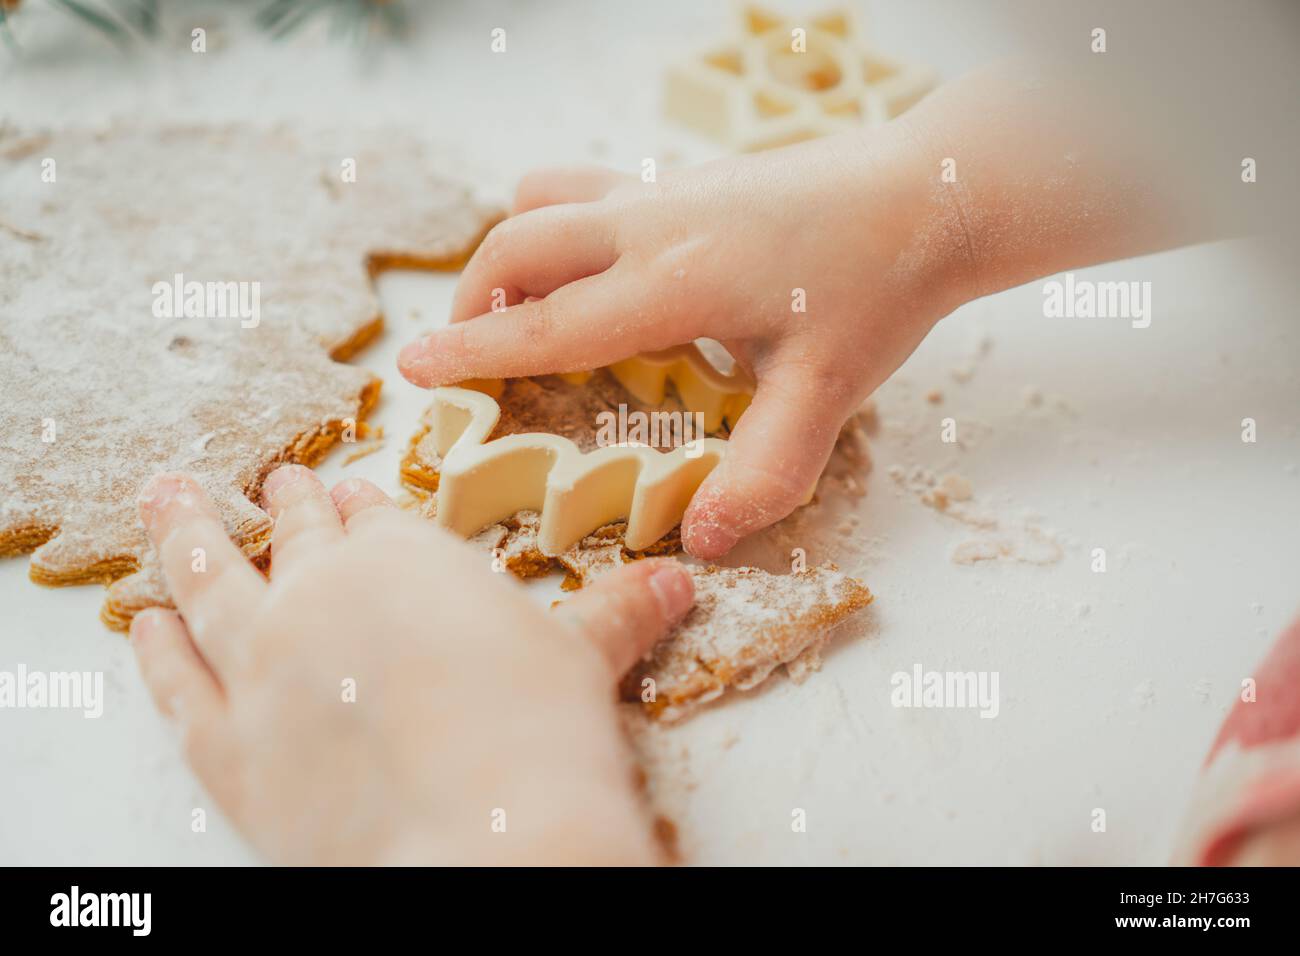 Teilweise verschwommene Hände eines kleinen Mädchens schneiden in der weißen Küche Weihnachtsbaum-Lebkuchenkekse aus gerolltem Teig aus. Das Kind bereitet Kekse auf Weiß zu Stockfoto